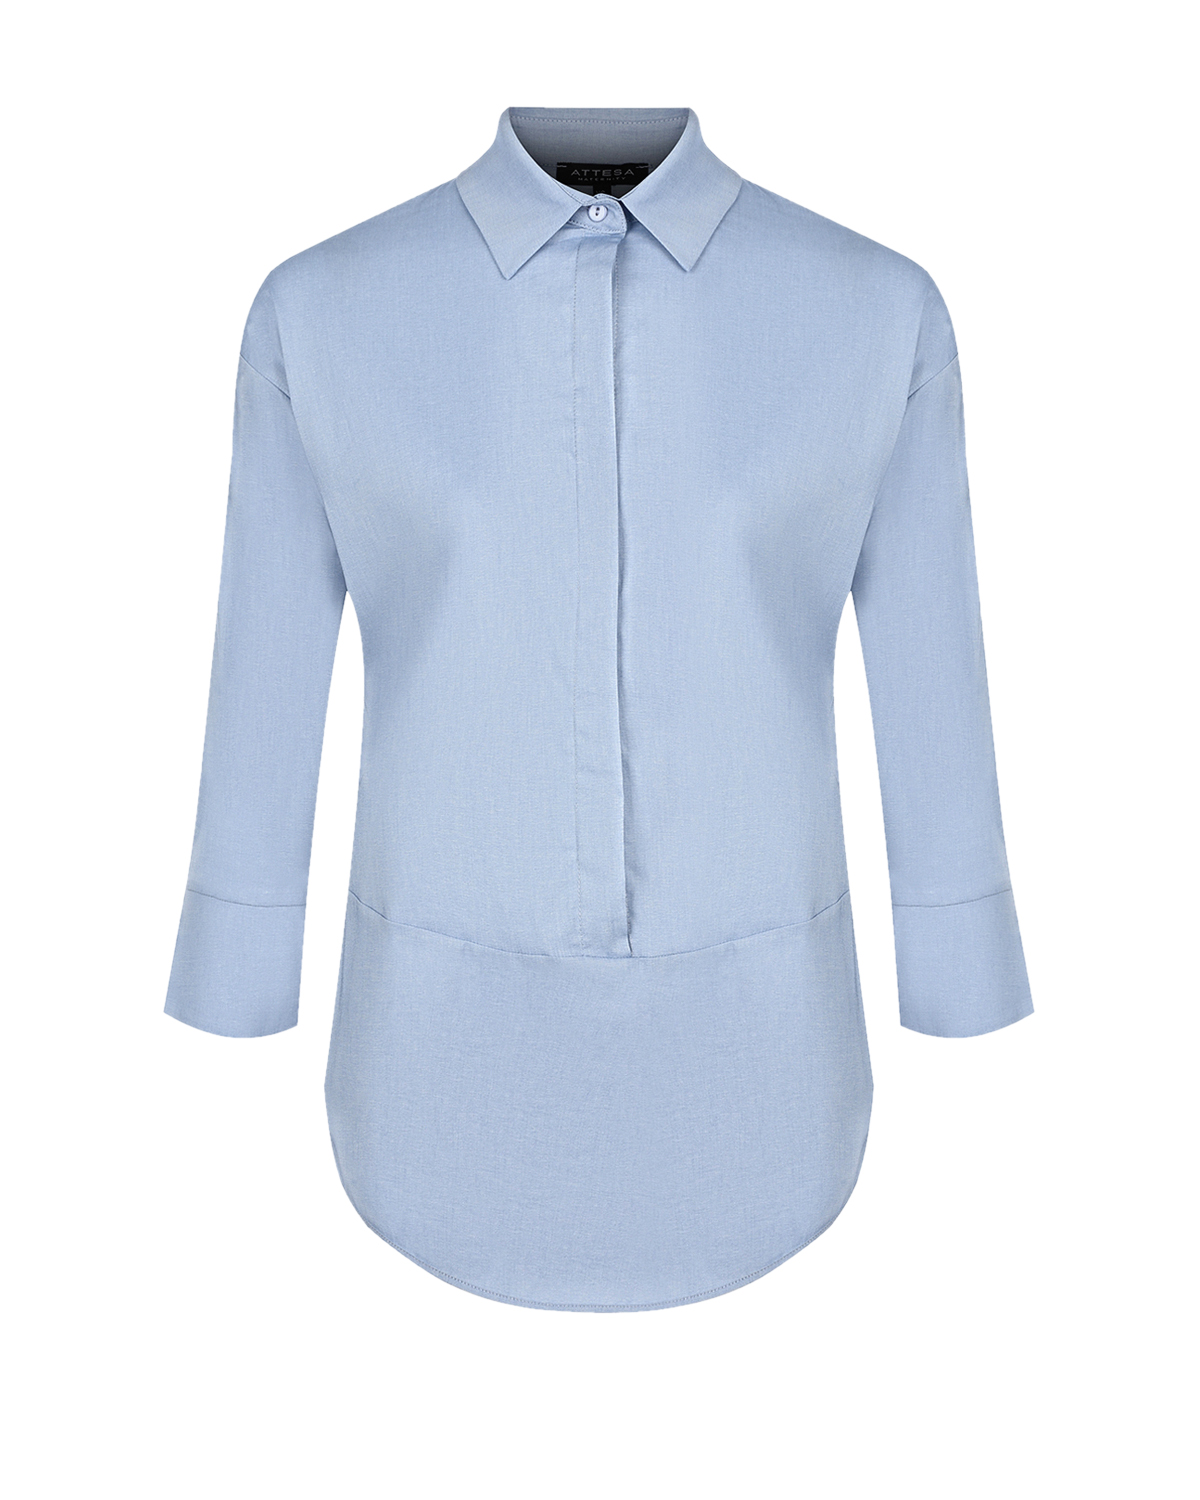 Синяя блуза с рукавами 3/4 Attesa, размер 38, цвет синий Синяя блуза с рукавами 3/4 Attesa - фото 1